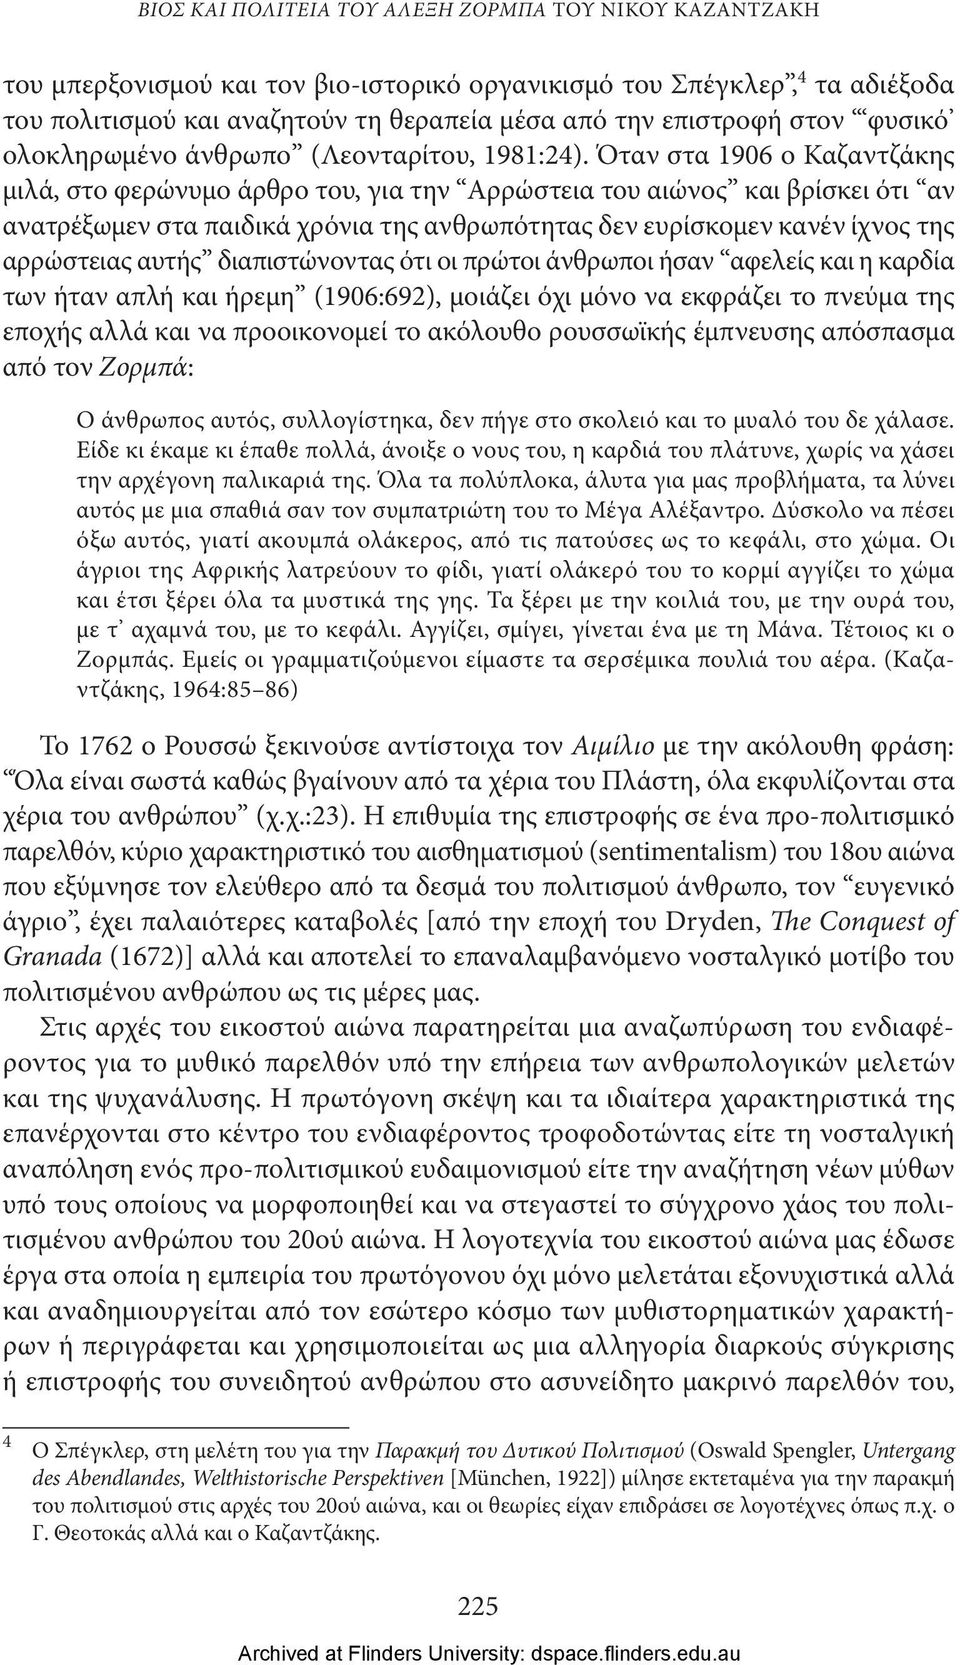 Όταν στα 1906 ο Καζαντζάκης μιλά, στο φερώνυμο άρθρο του, για την Αρρώστεια του αιώνος και βρίσκει ότι αν ανατρέξωμεν στα παιδικά χρόνια της ανθρωπότητας δεν ευρίσκομεν κανέν ίχνος της αρρώστειας